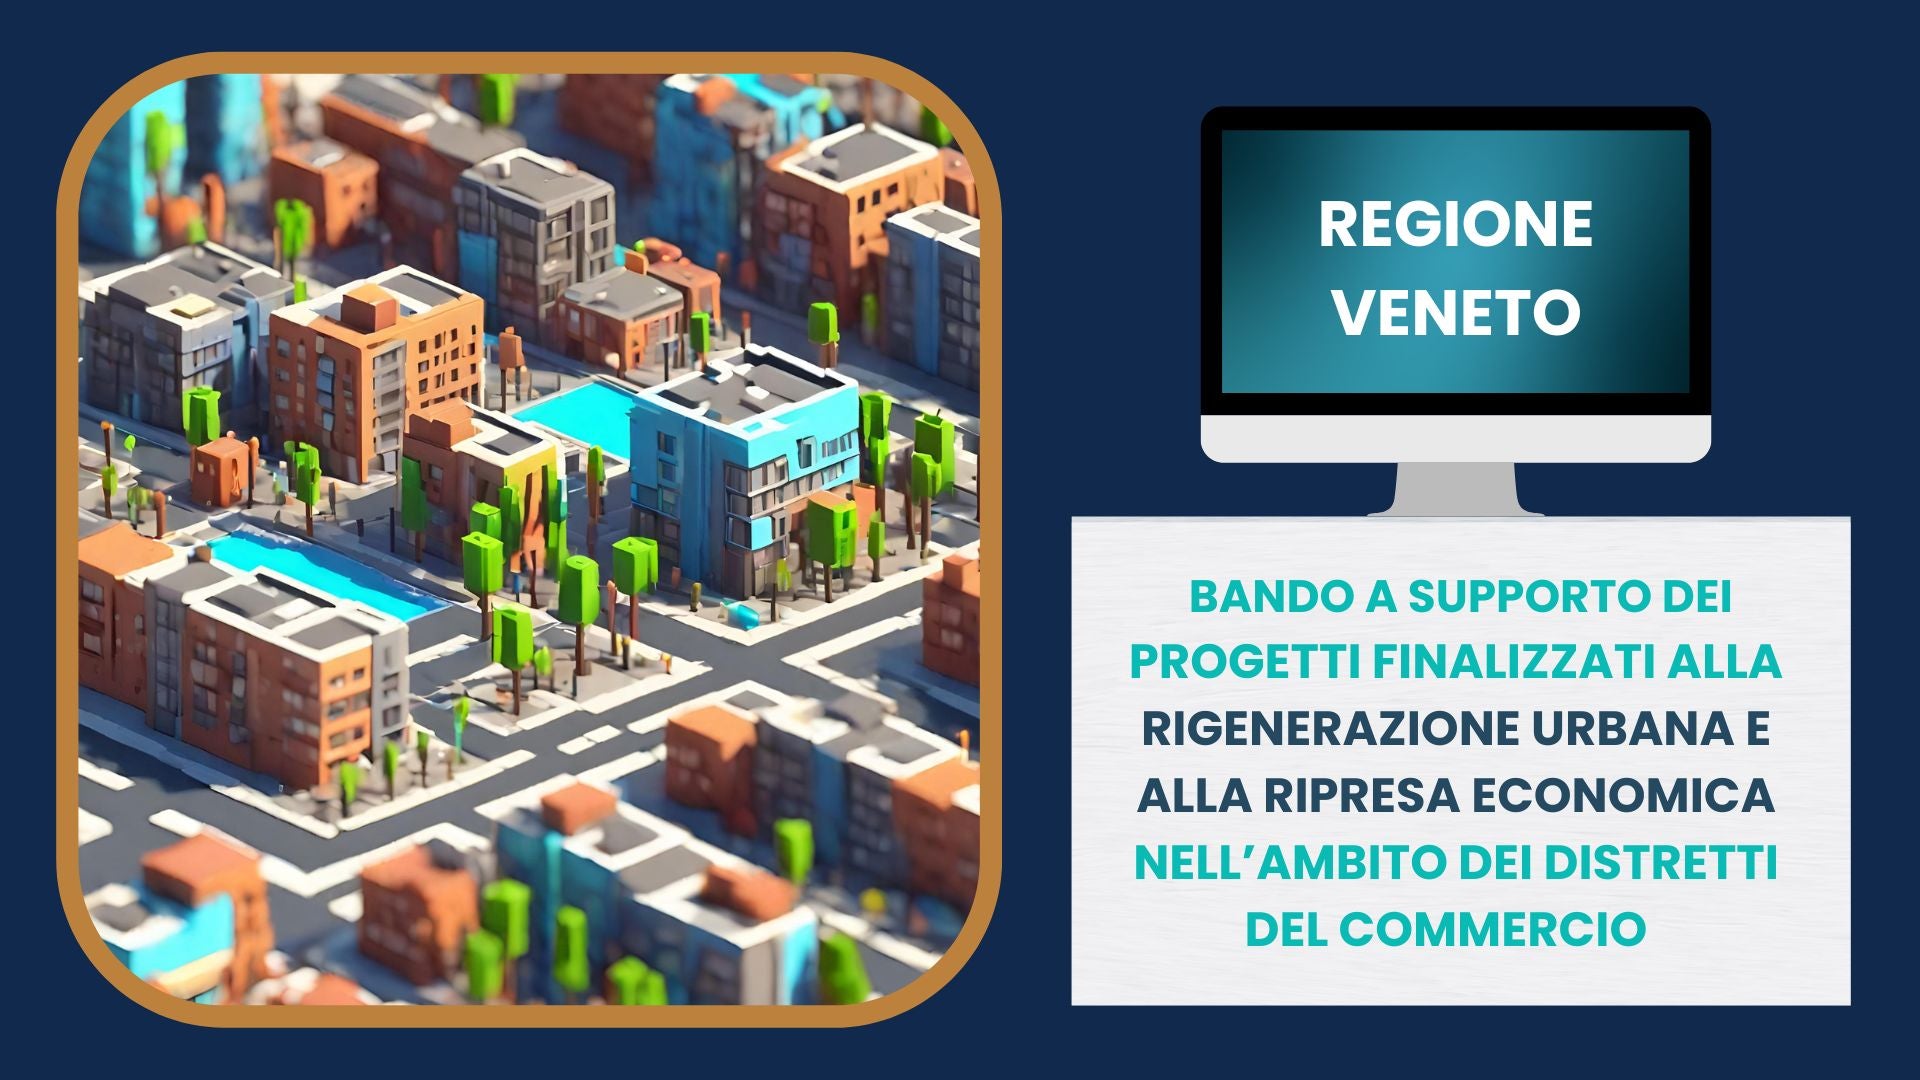 Regione Veneto: bando a supporto della rigenerazione urbana e della ripresa economica nell'ambito dei distretti del Commercio